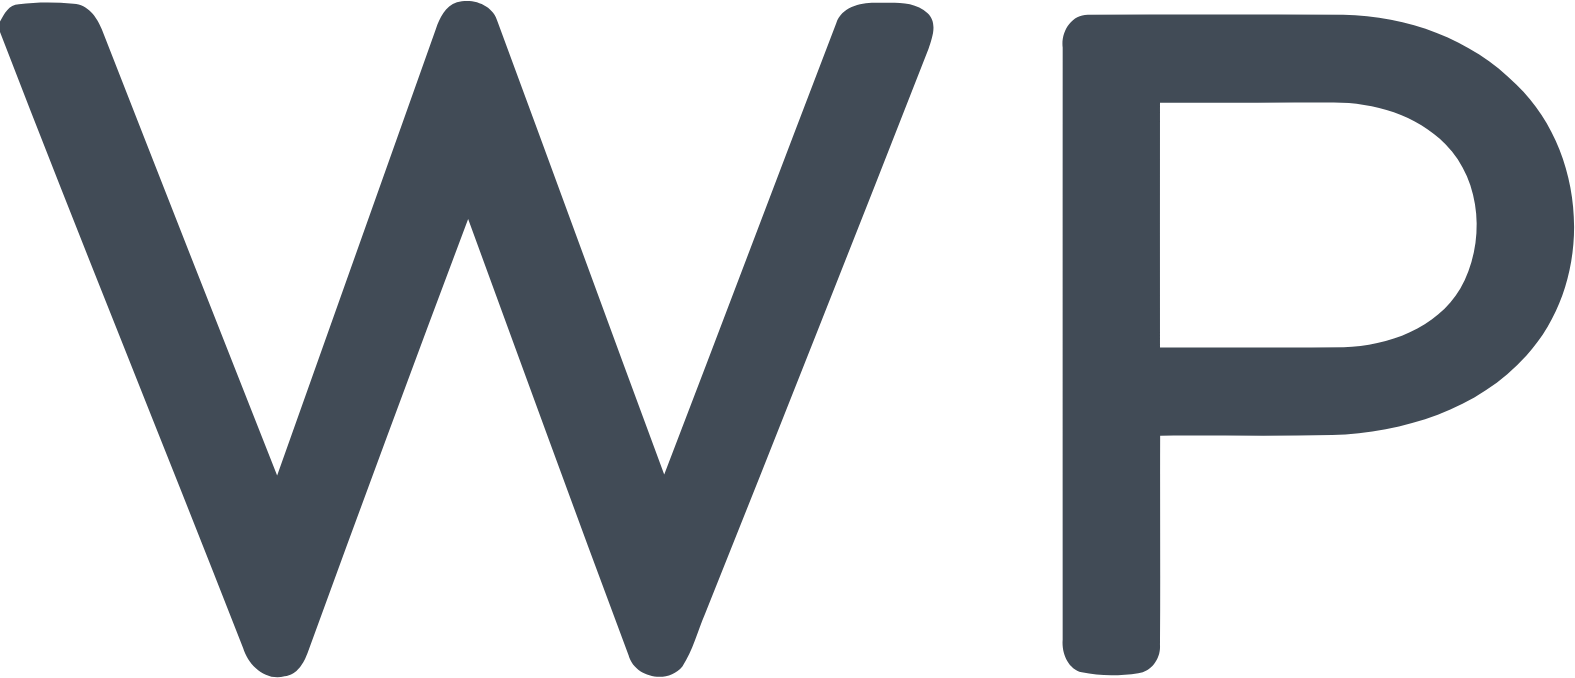 Warby Parker logo (PNG transparent)